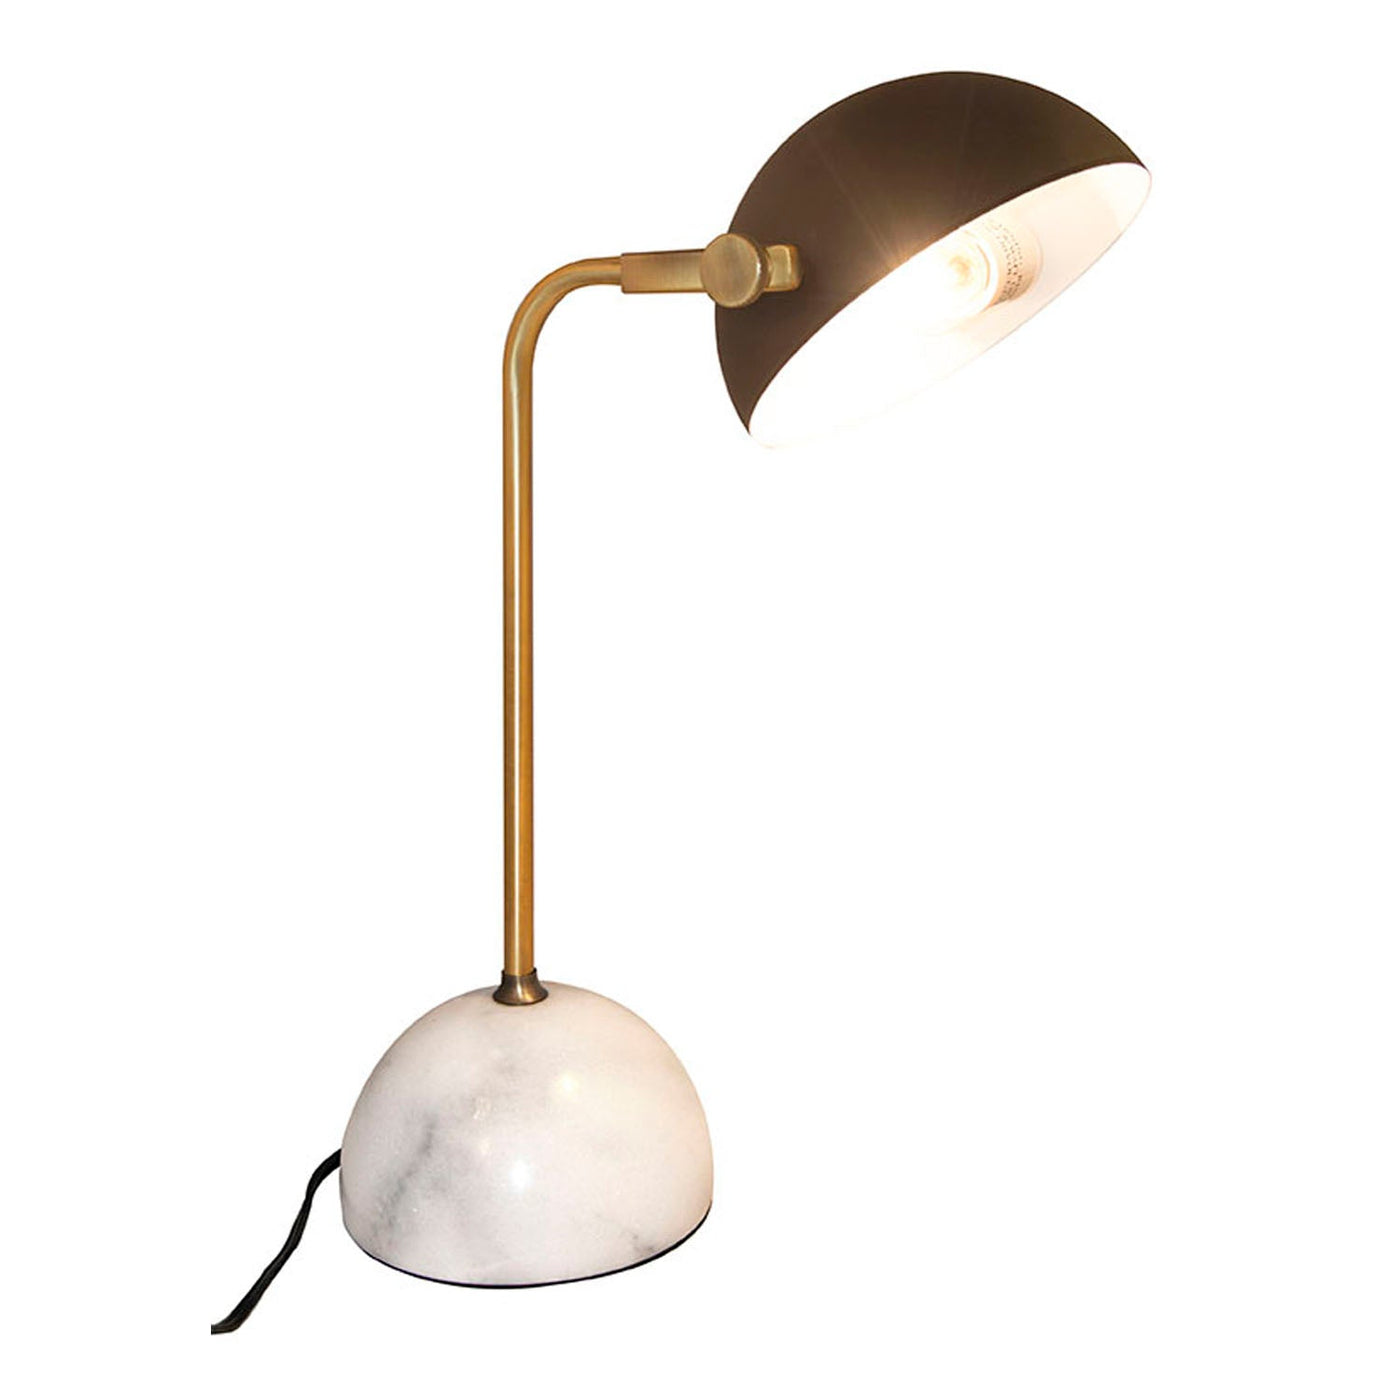 Bois et Cuir's Single-Bulb Desk Lamp